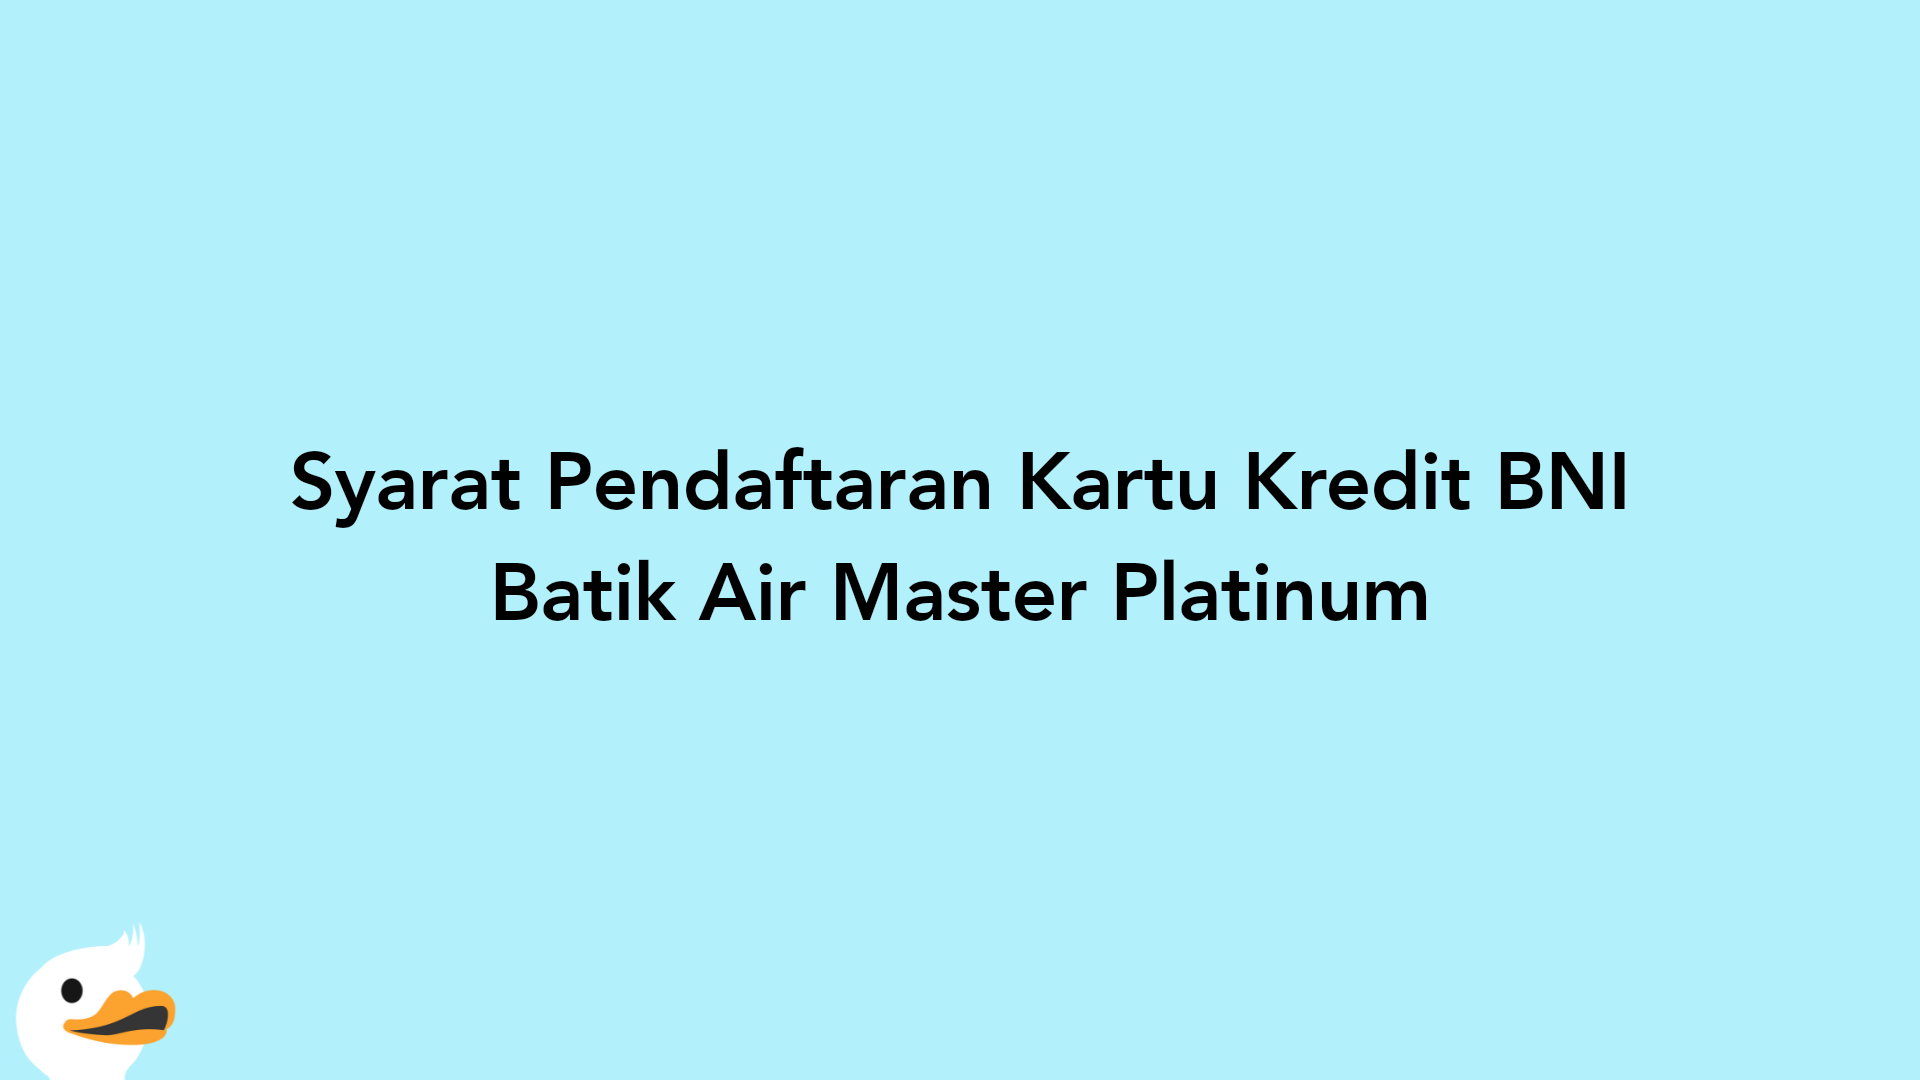 Syarat Pendaftaran Kartu Kredit BNI Batik Air Master Platinum